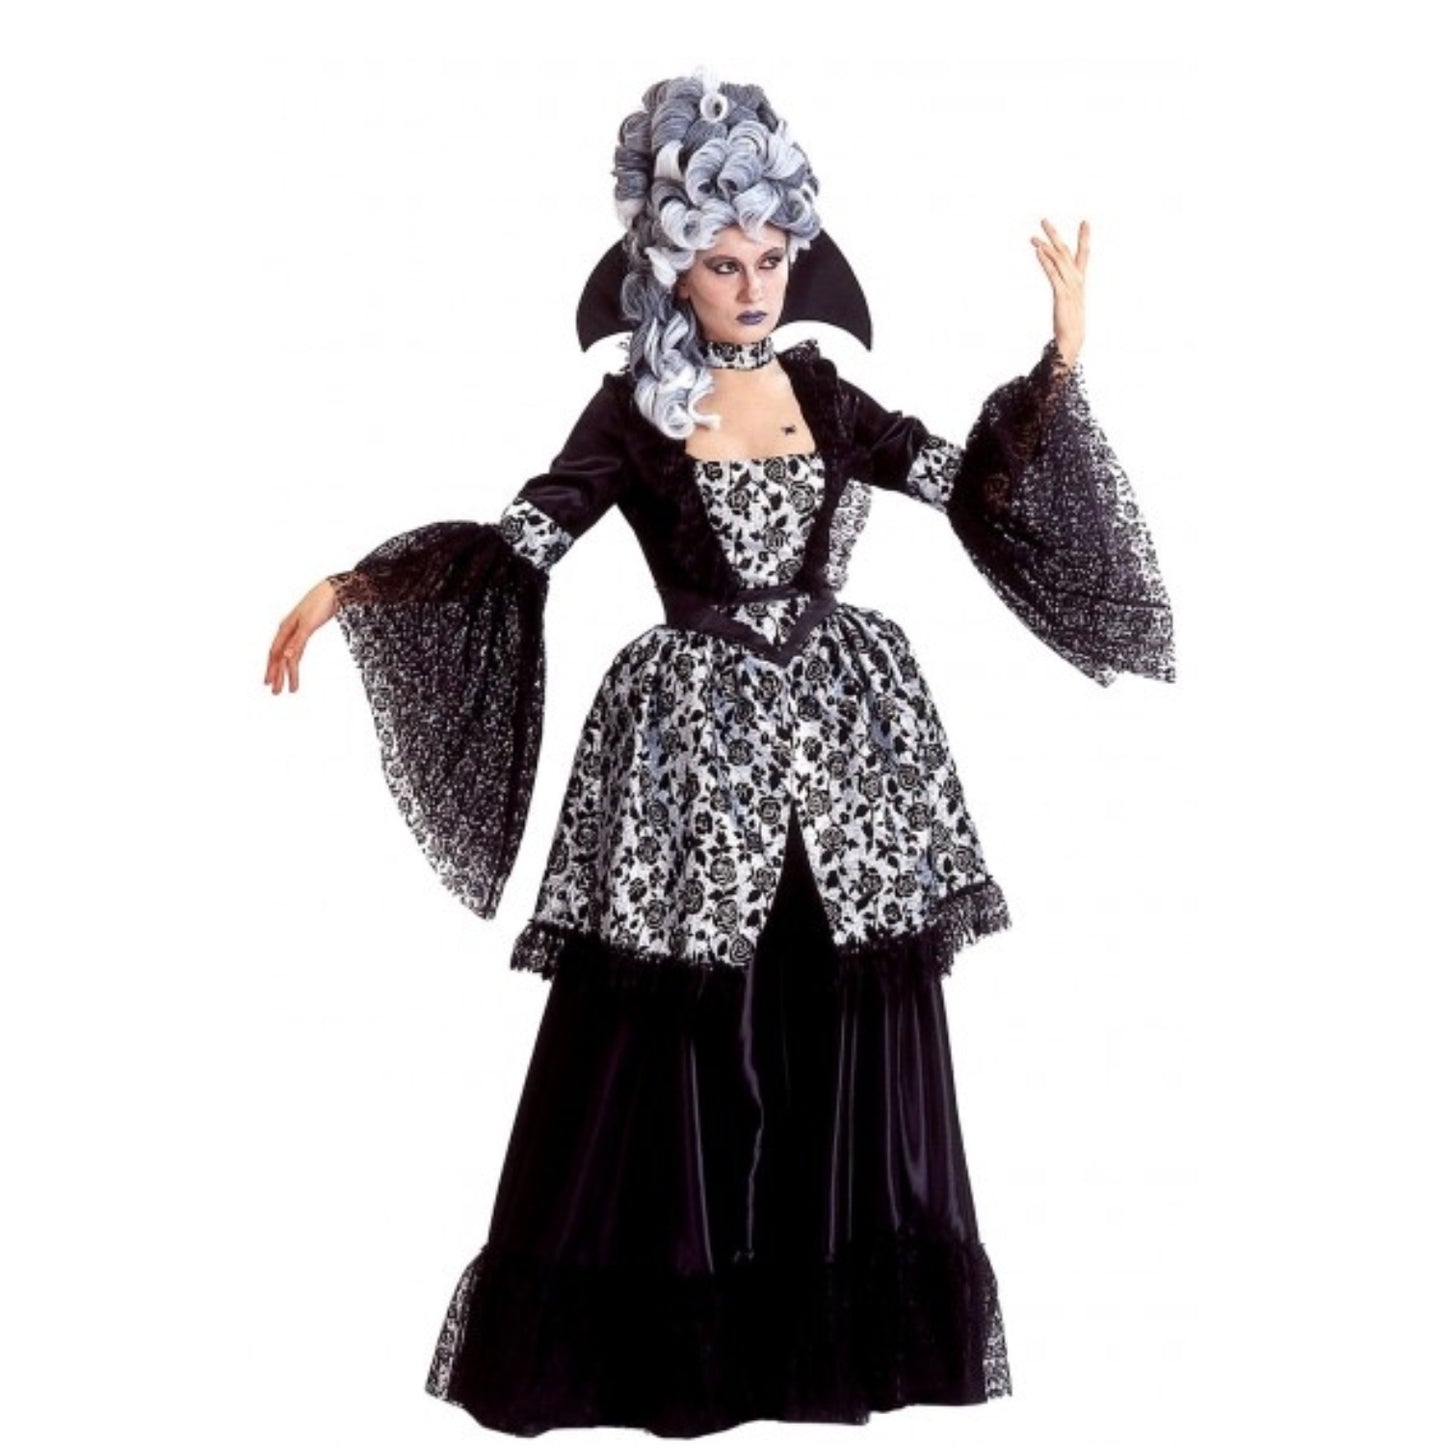 Madame Aristocrat Costume